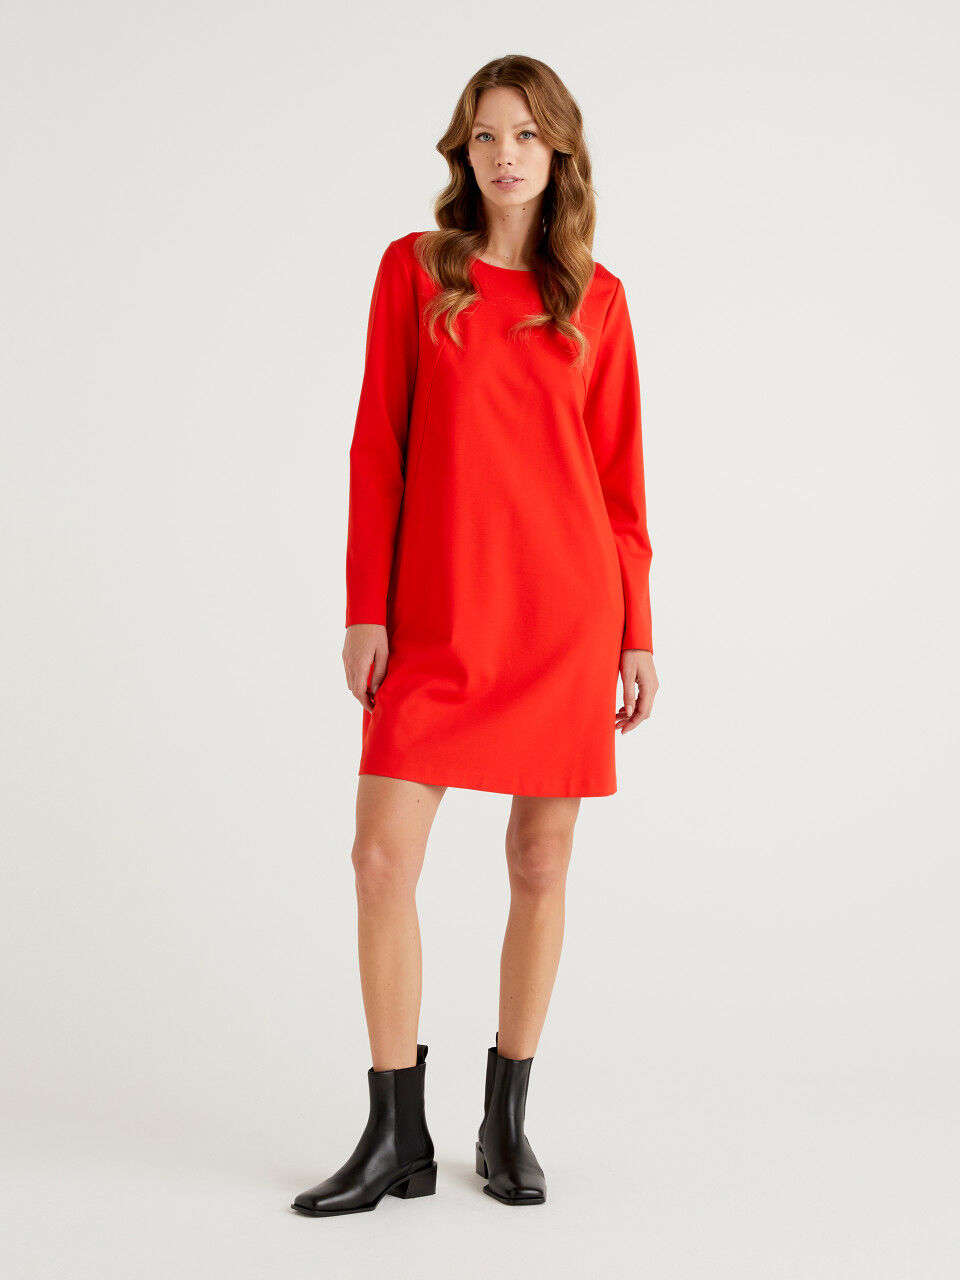 Womens Dresses Benetton Dresses Red - Save 31% Benetton Vestito 107vdv001 Dress in Magenta 68 m 